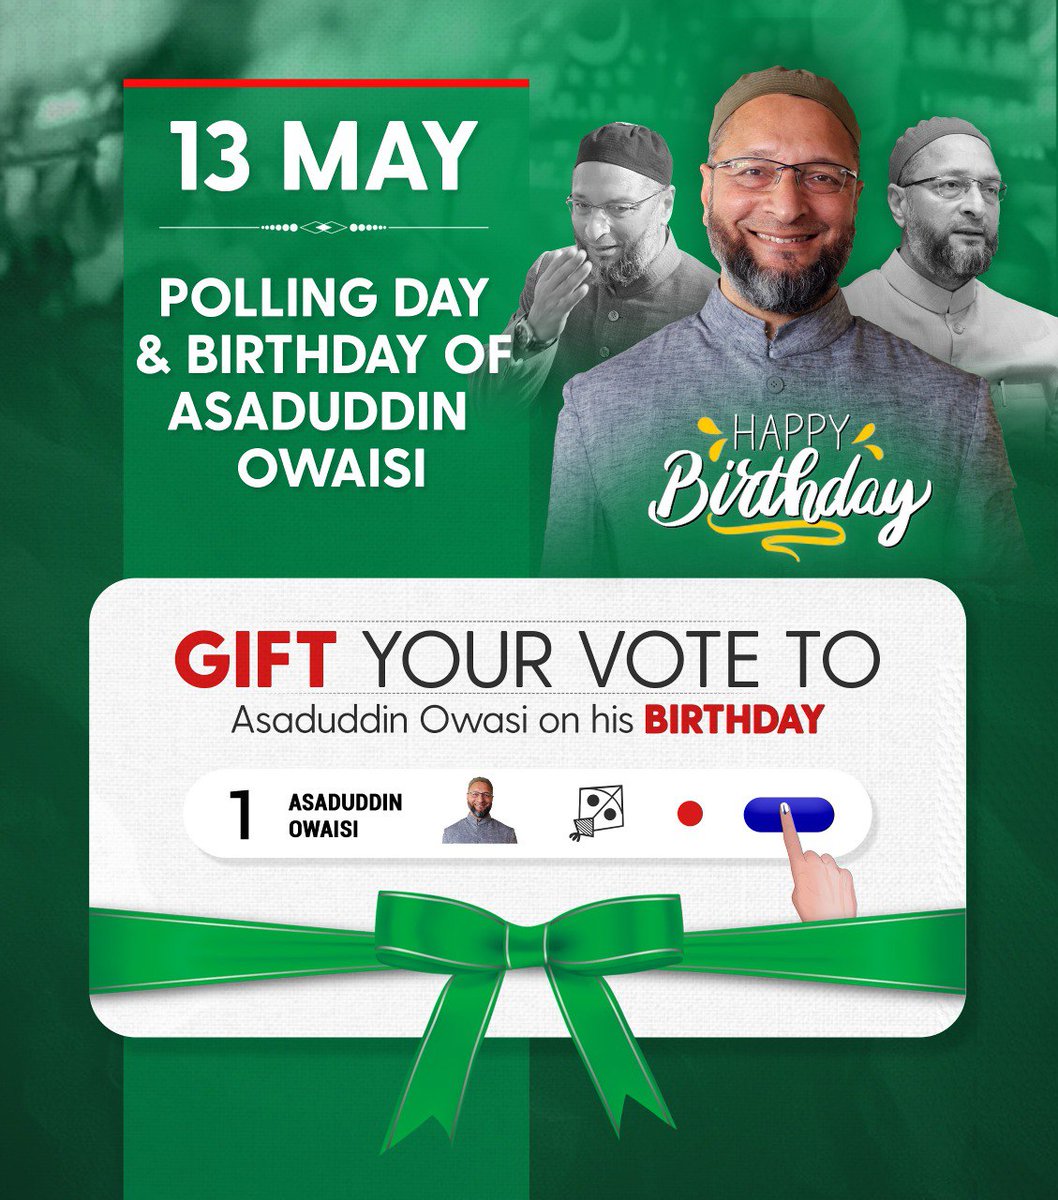 आज यानी 13 मई को जनाब बैरिस्टर @asadowaisi साहब का जन्म दिन है,
आज ही वोटिंग का दिन है, हैदराबाद के आवाम से गुजारिश है असद साहब के जन्म दिन के मौके पर अपना कीमती वोट तोहफे में देकर हमेशा की तरह कामयाब बनाए,
अल्लाह पाक असद साहब के उम्र में बरकत अता फरमाए, आमीन 🤲
#VoteForKite